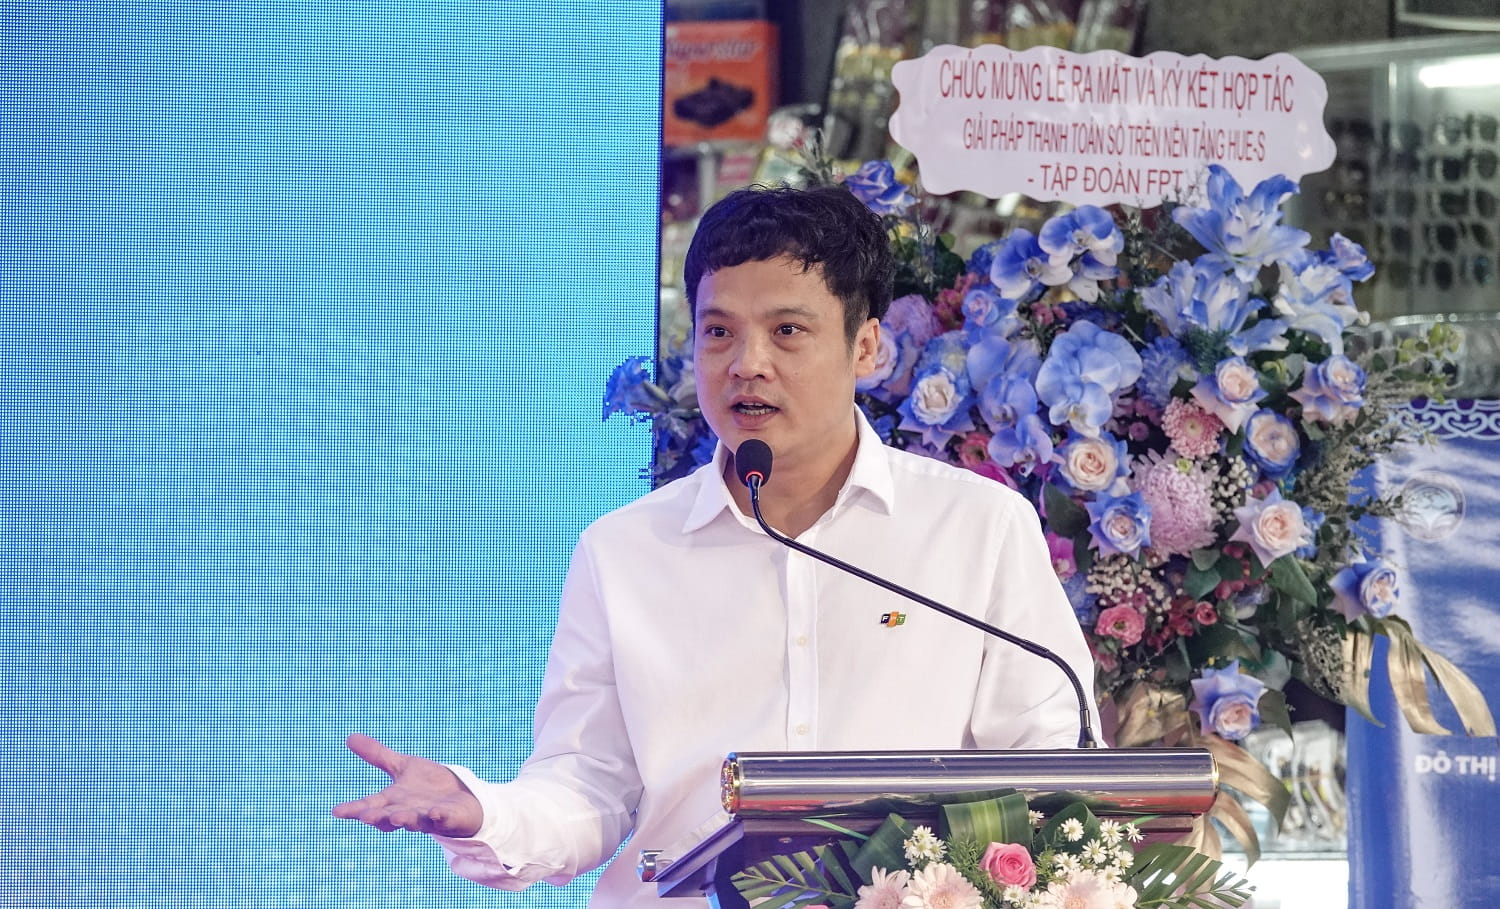 Ông Nguyễn Văn Khoa - Tổng Giám đốc Tập đoàn FPT phát biểu tại sự kiện